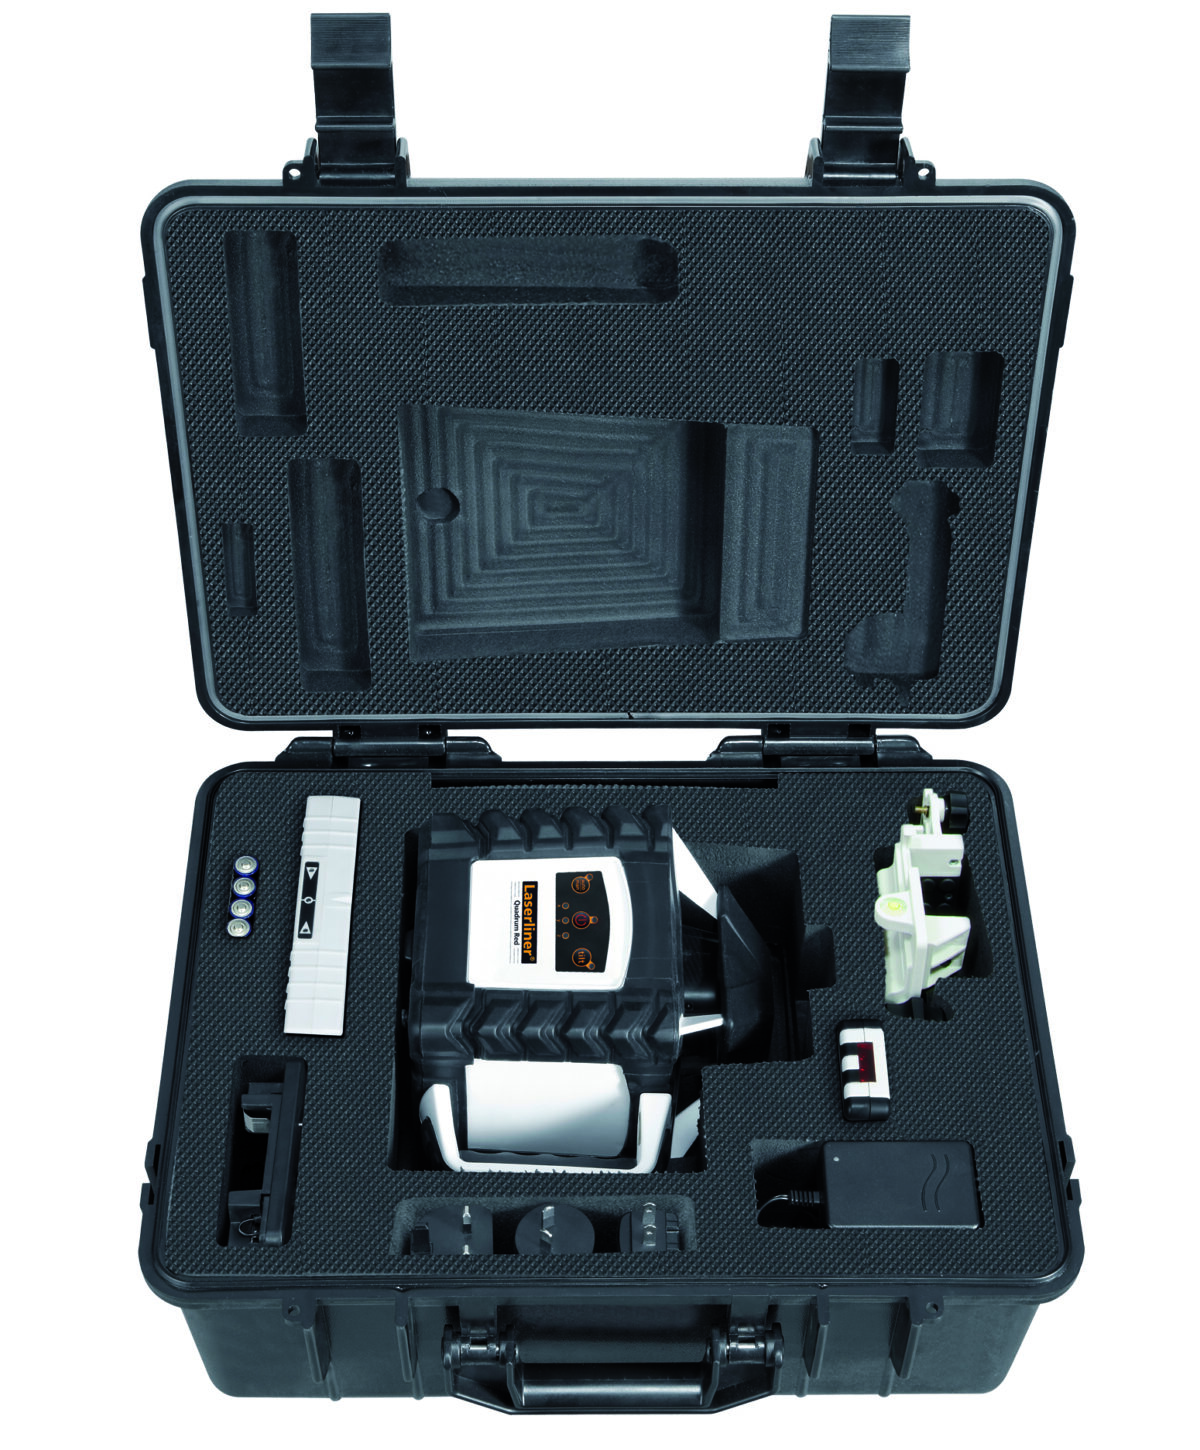 Laserliner Quadrum 410 S - Carry Case